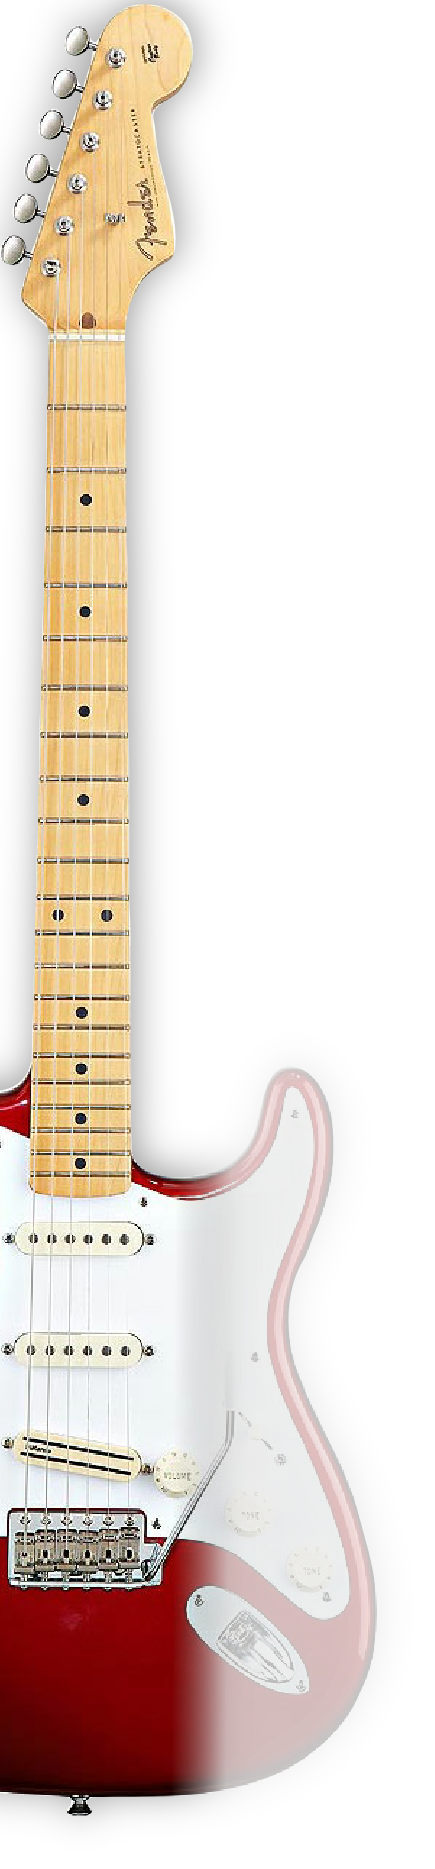 red fender stratocaster